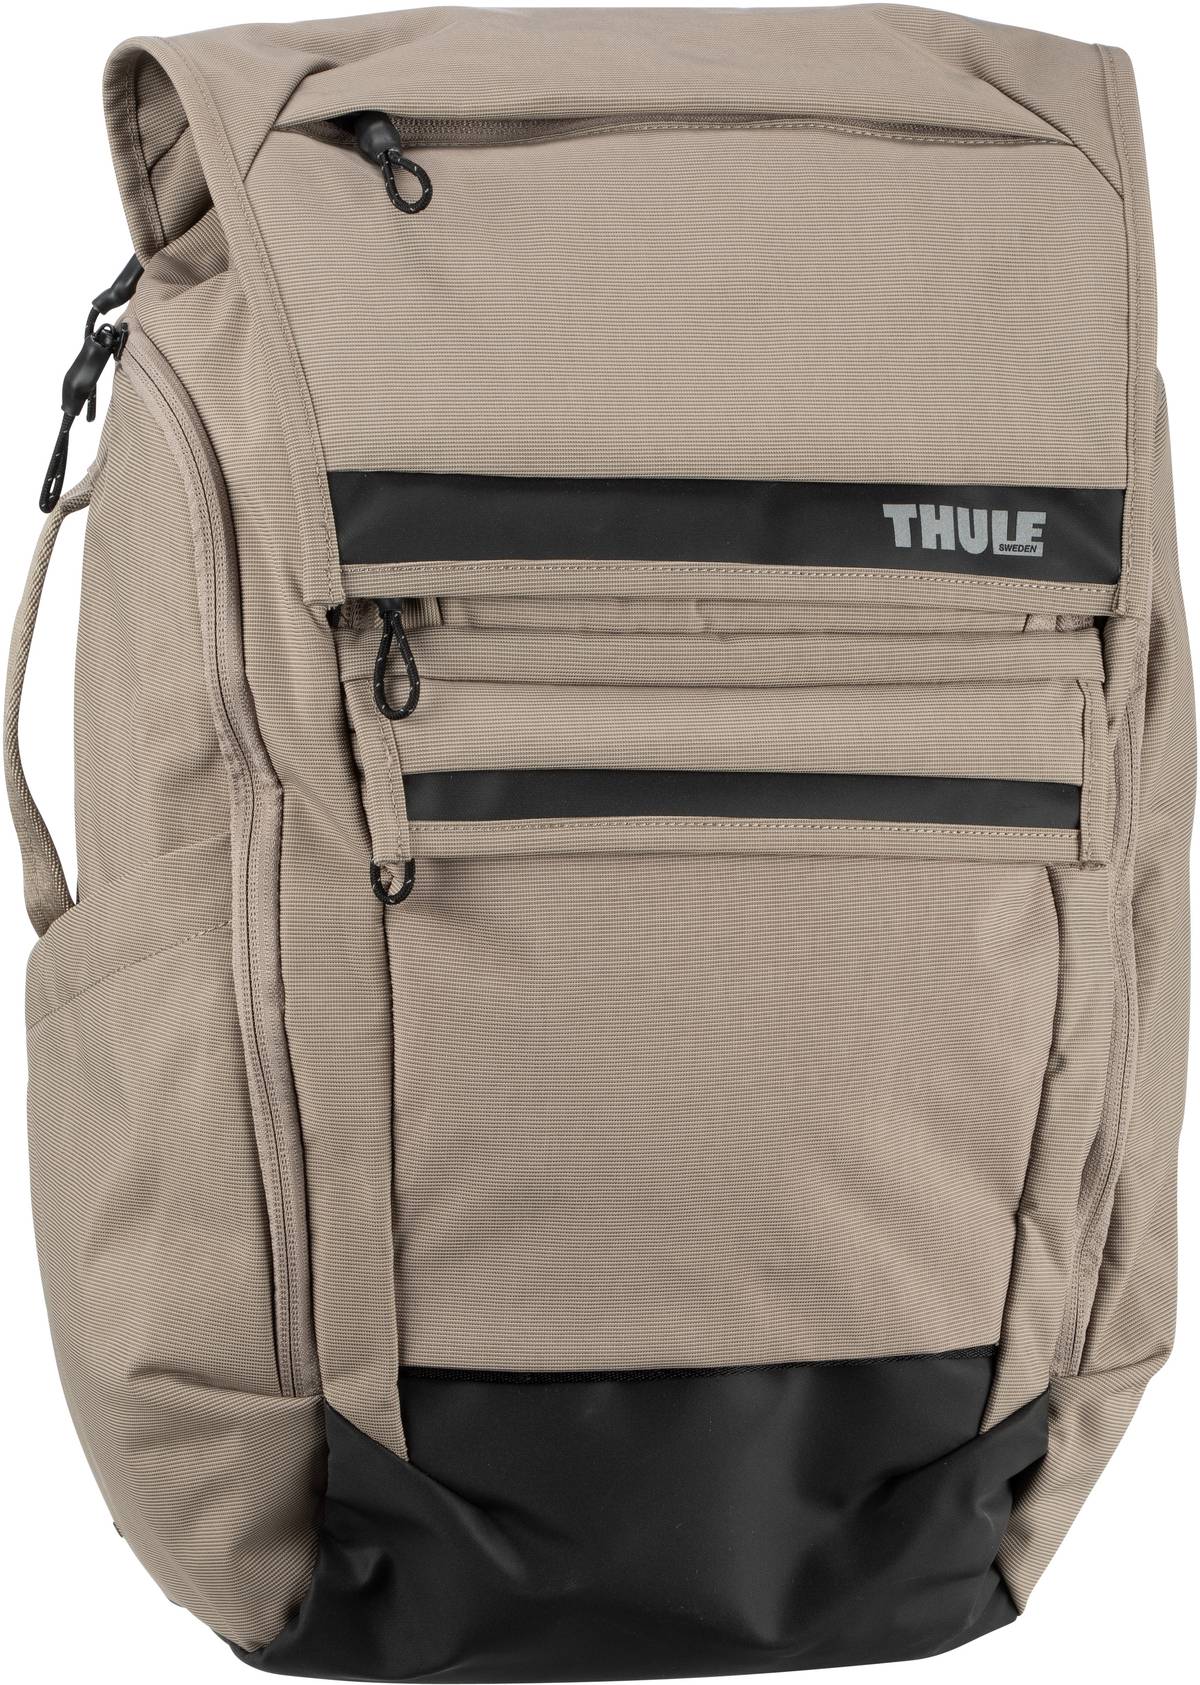 Thule Thule Paramount Backpack 27L in Beige (27 Liter), Rucksack / Backpack